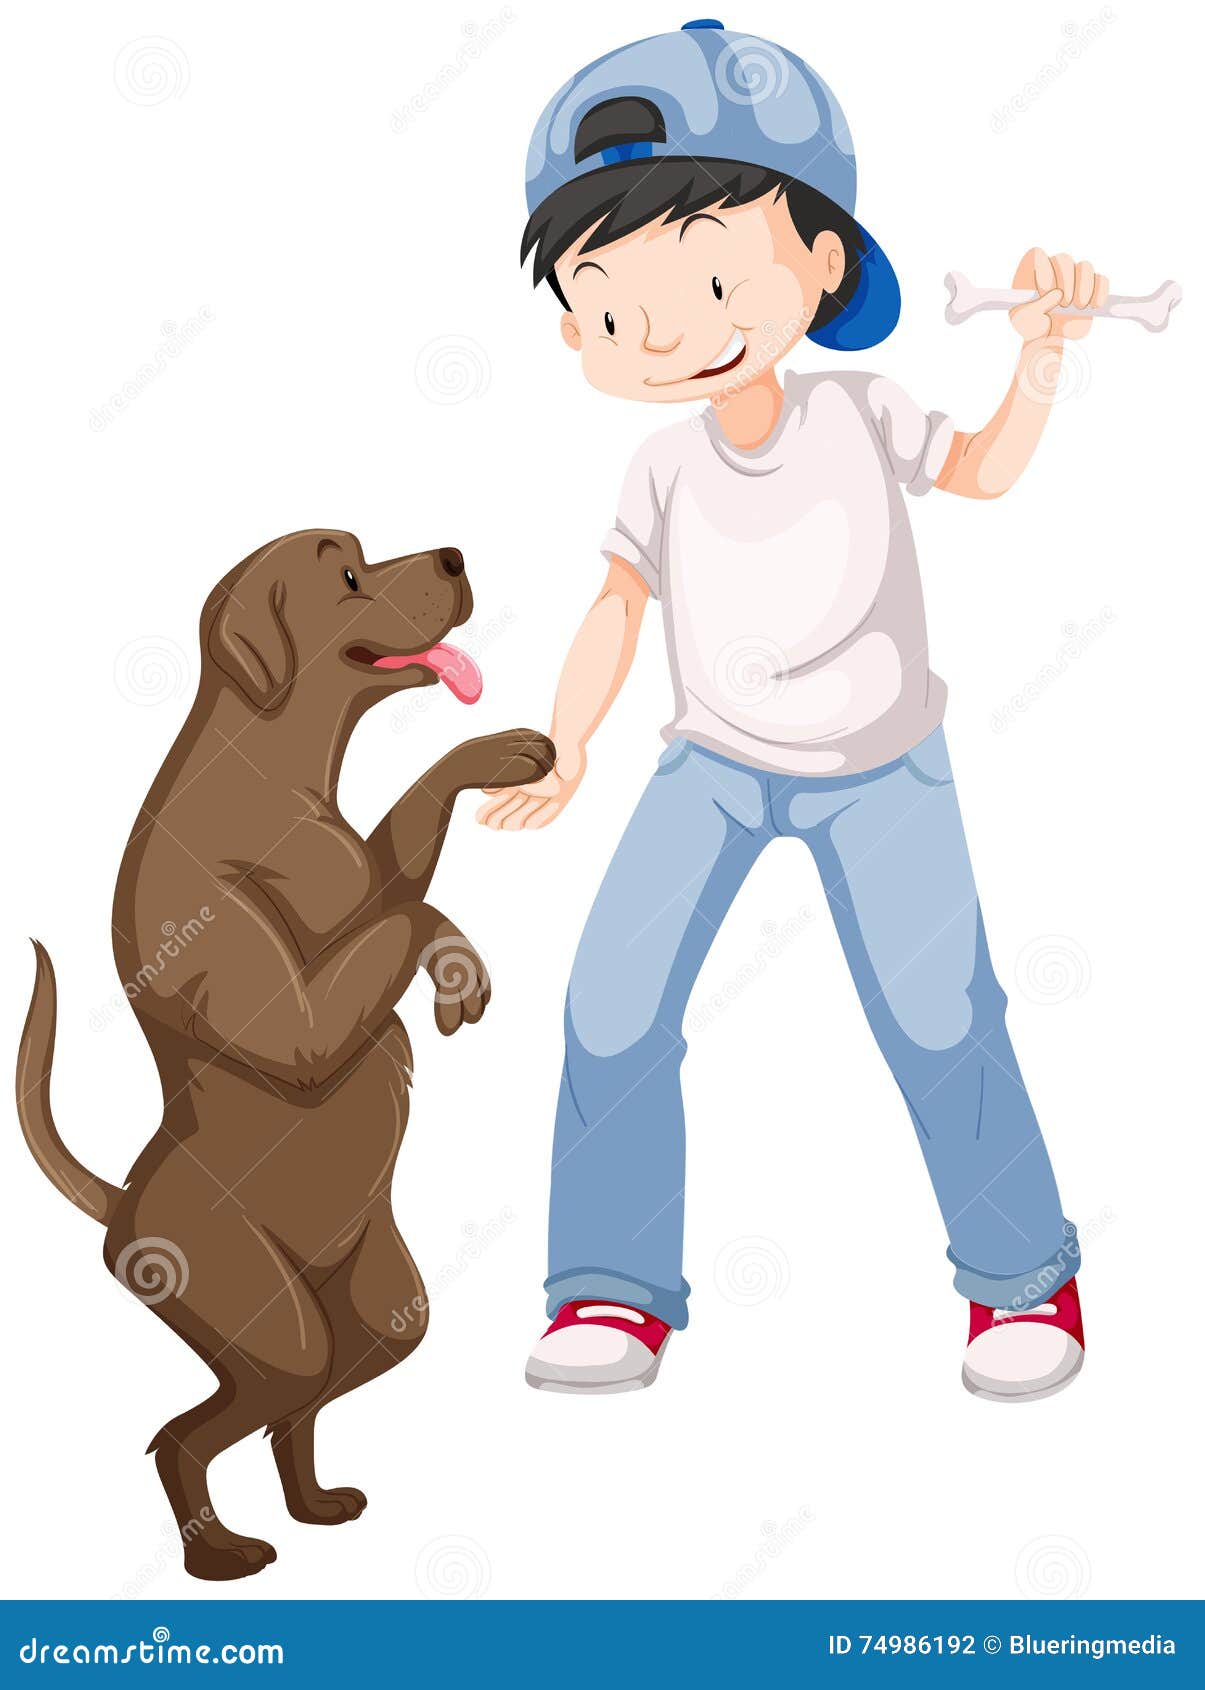 Мальчик играющий с собакой. Мальчик с собакой рисунок. Мальчик играет с собакой. Картинка мальчик с собакой.